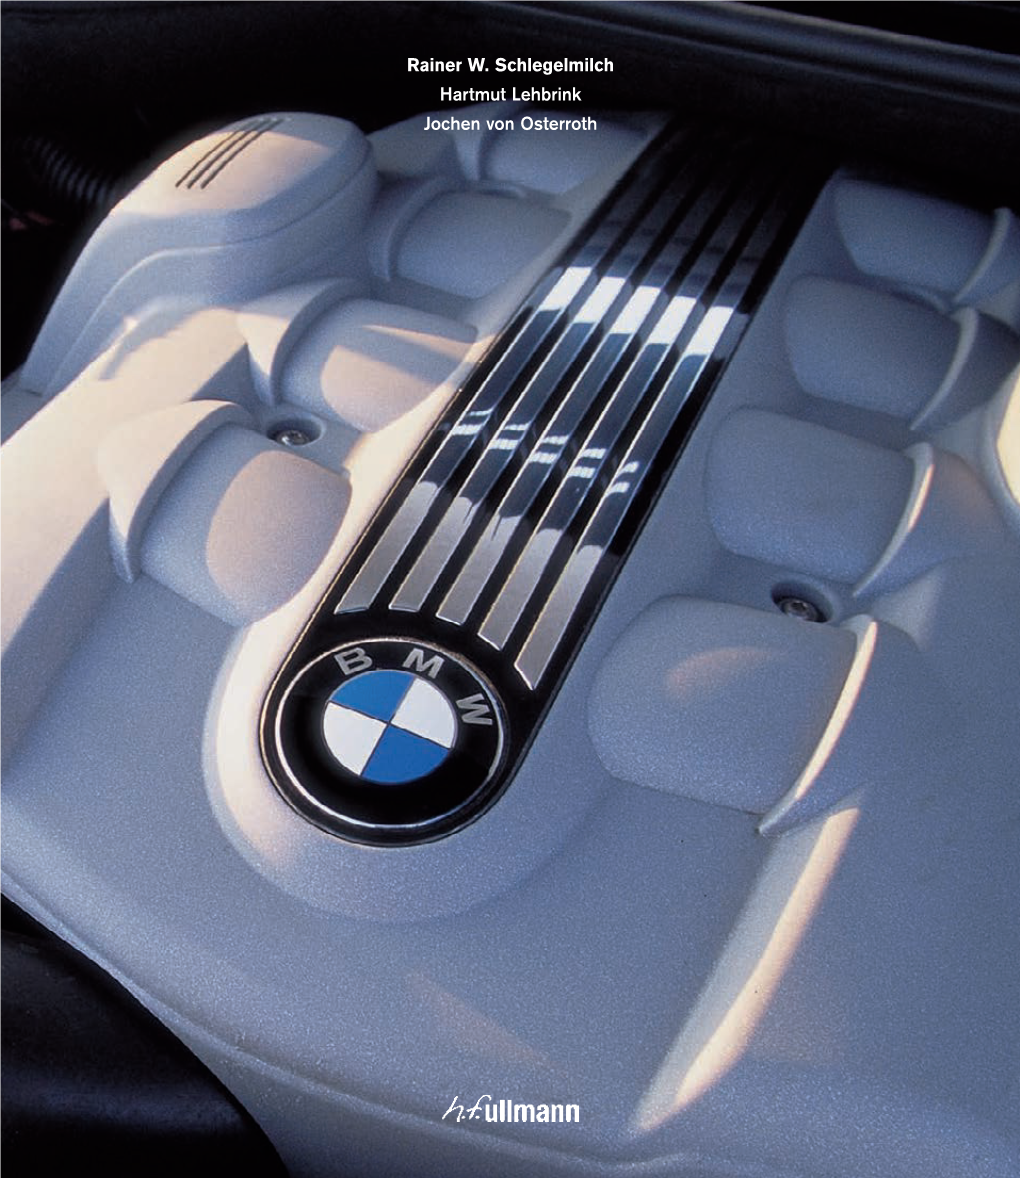 Aufstieg Zur Weltmarke BMW Devient Une Marque Internationale